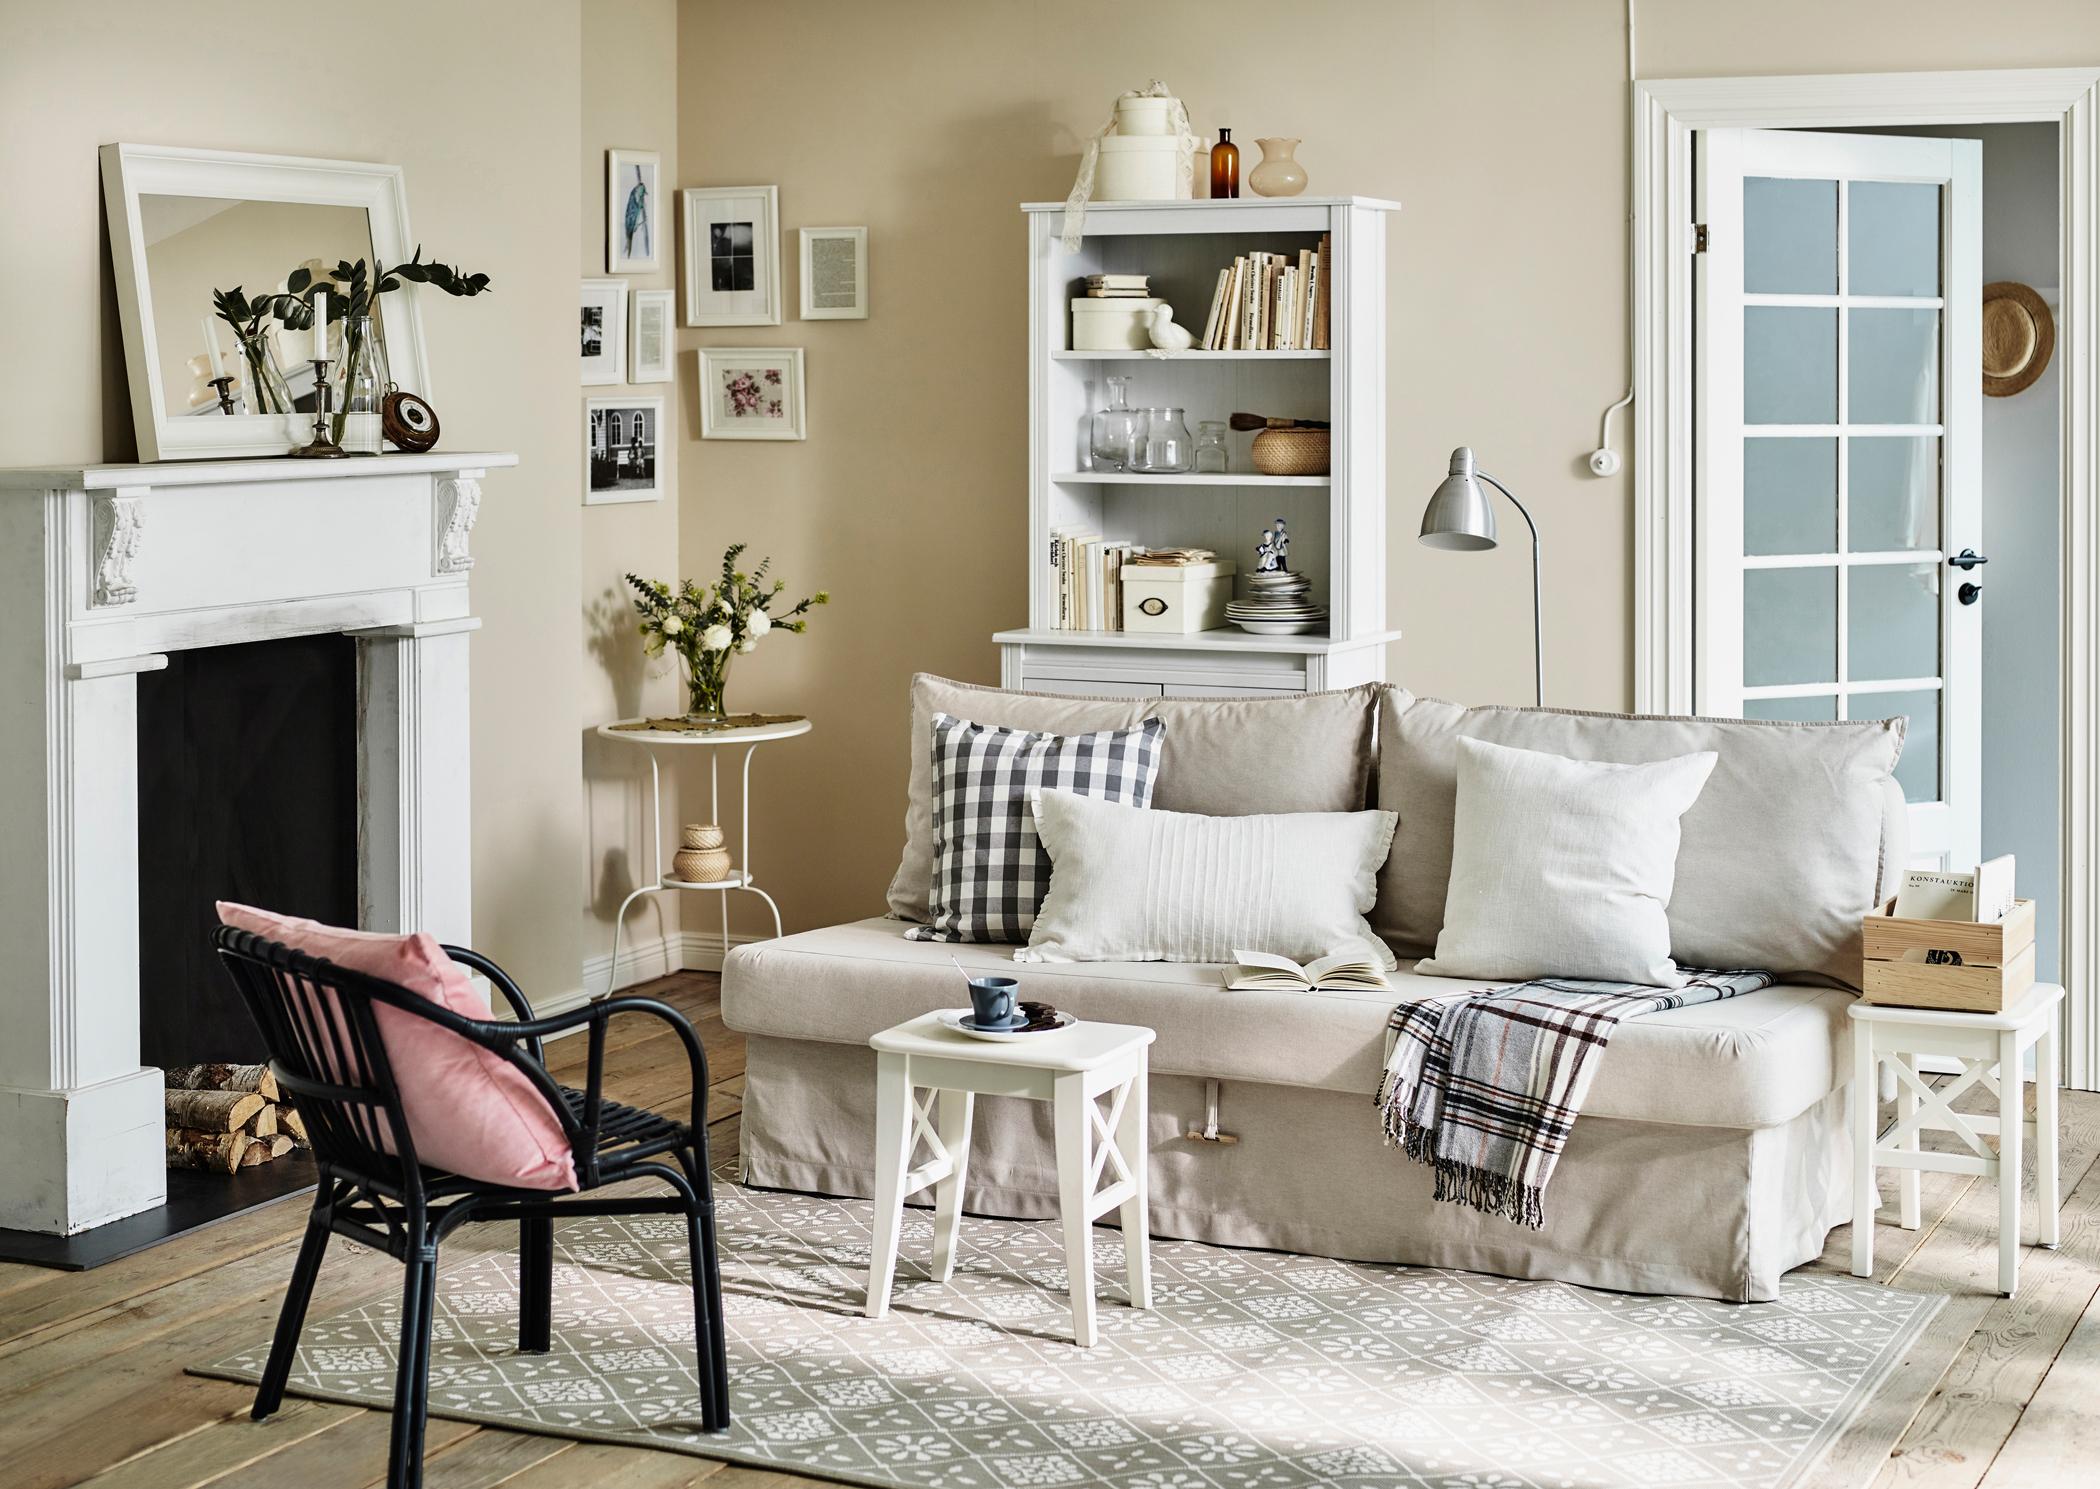 Wohnzimmer im Landhausstil #stuhl #couchtisch #beistelltisch #kamin #ikea #sofa #weißercouchtisch #zimmergestaltung ©Inter IKEA Systems B.V.